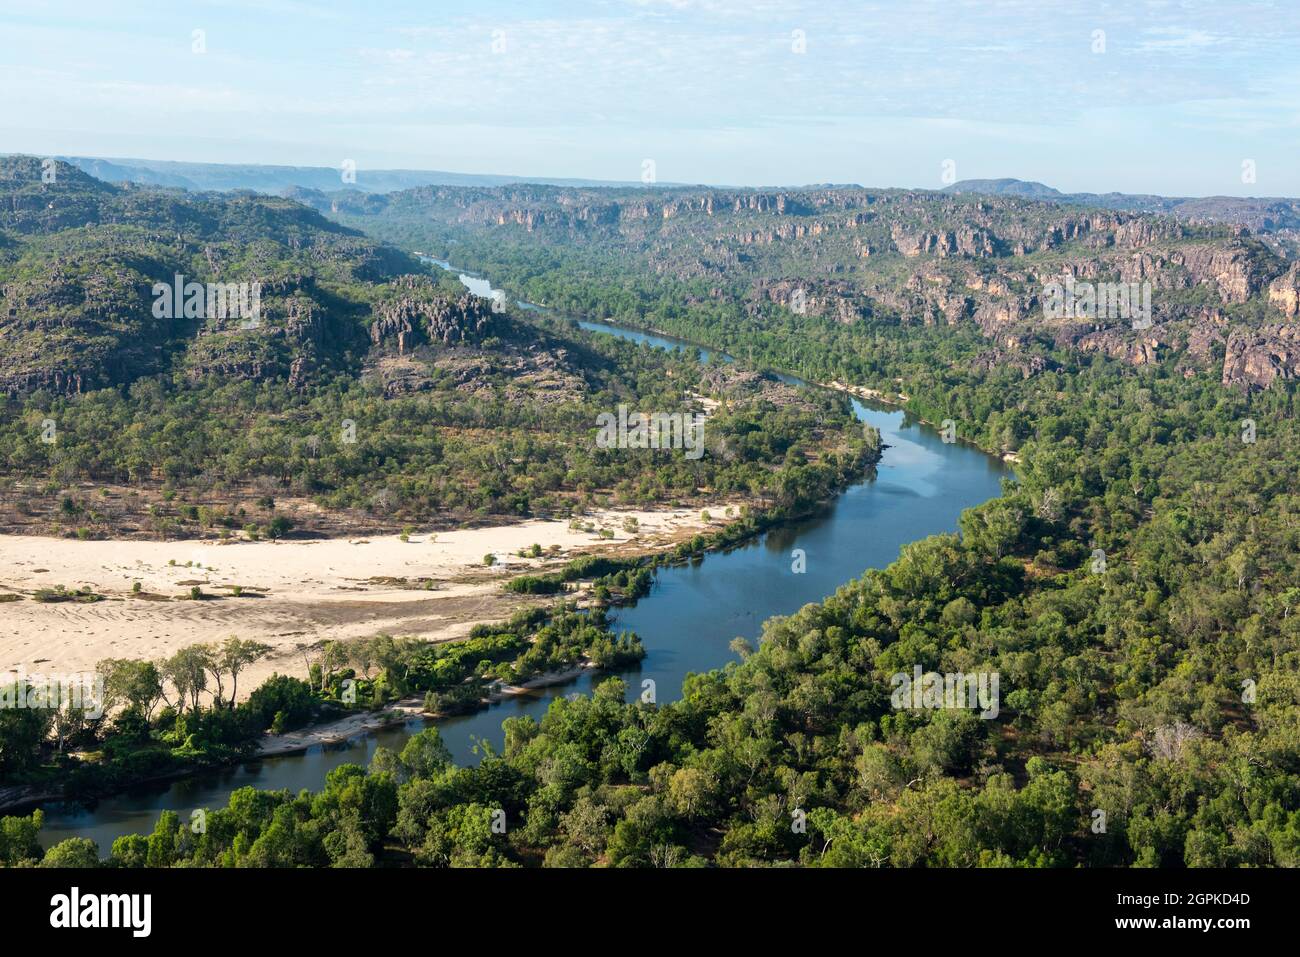 Parc national de Kakadu, territoire du Nord, Australie. Vue aérienne de la terre d'Arnham et de la rivière Alligator est. Banque D'Images